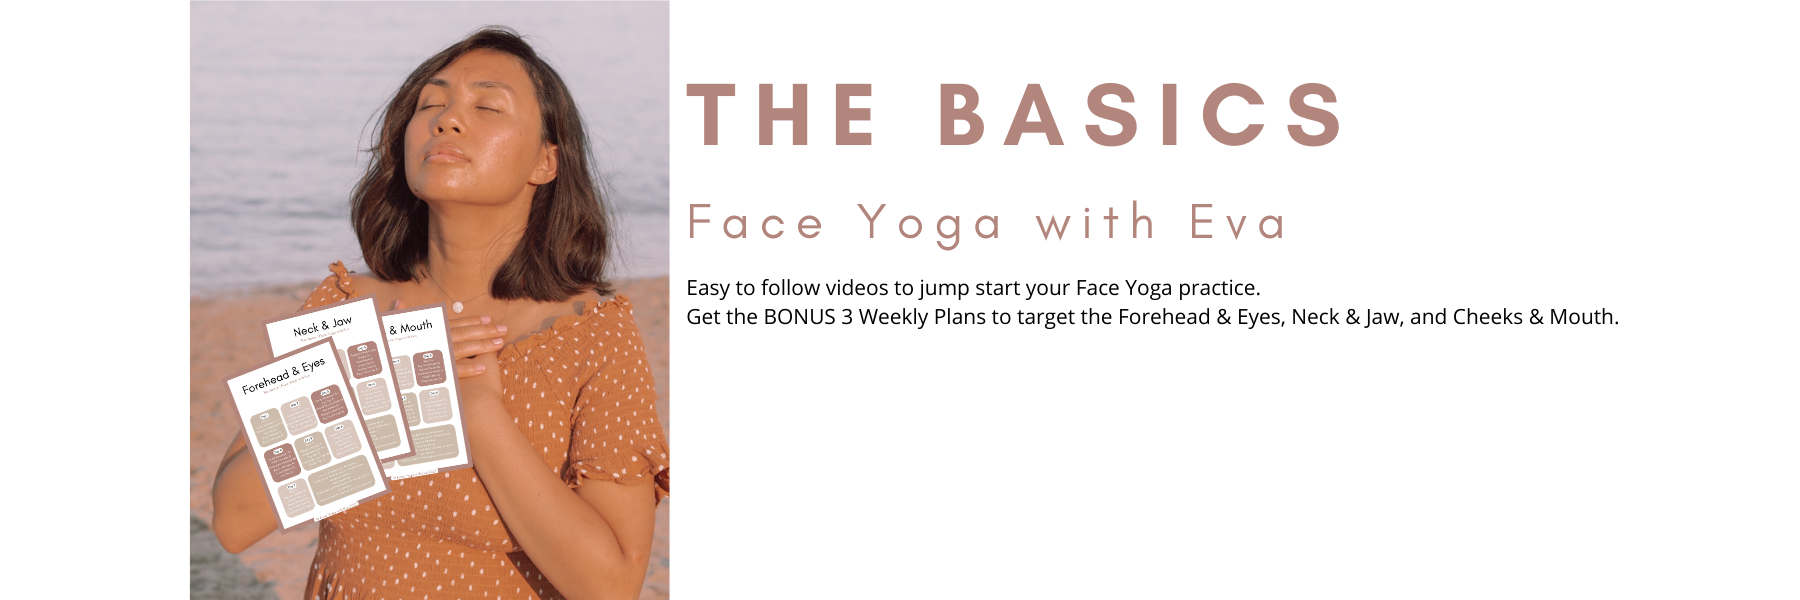 basics of face yoga